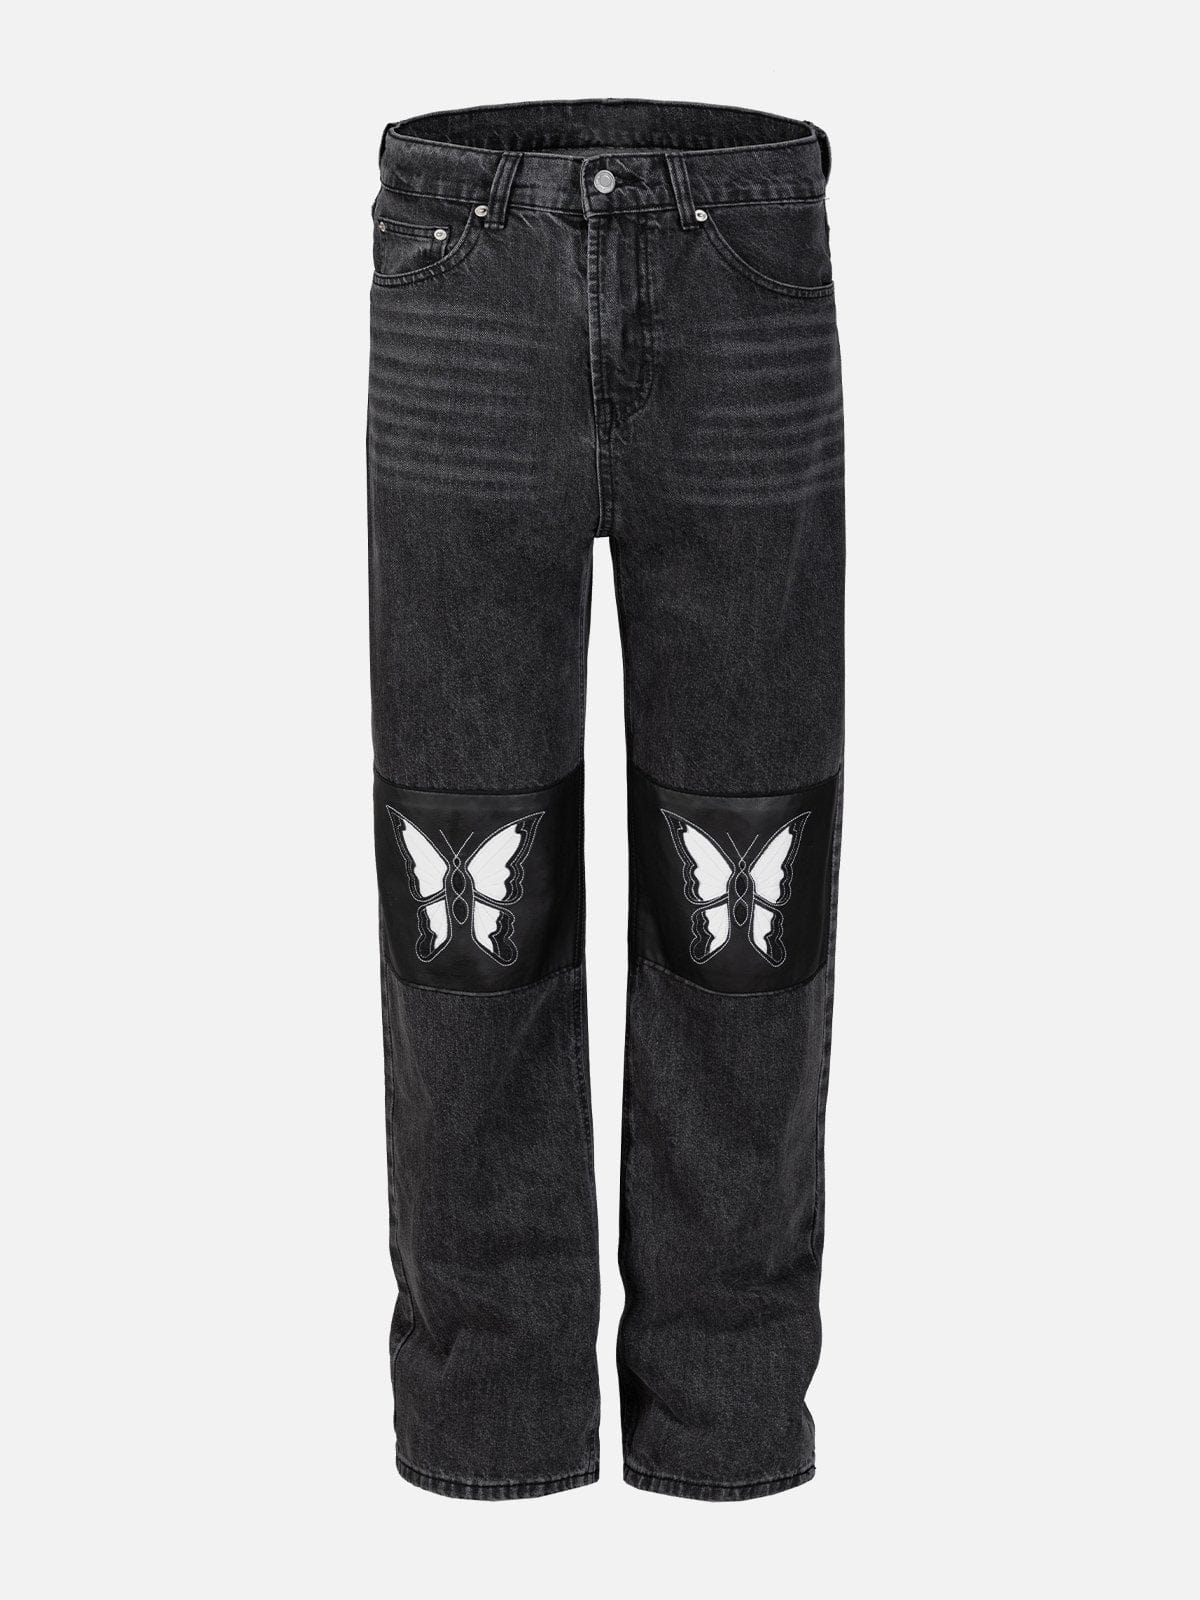 NEV Butterfly Patch Jeans